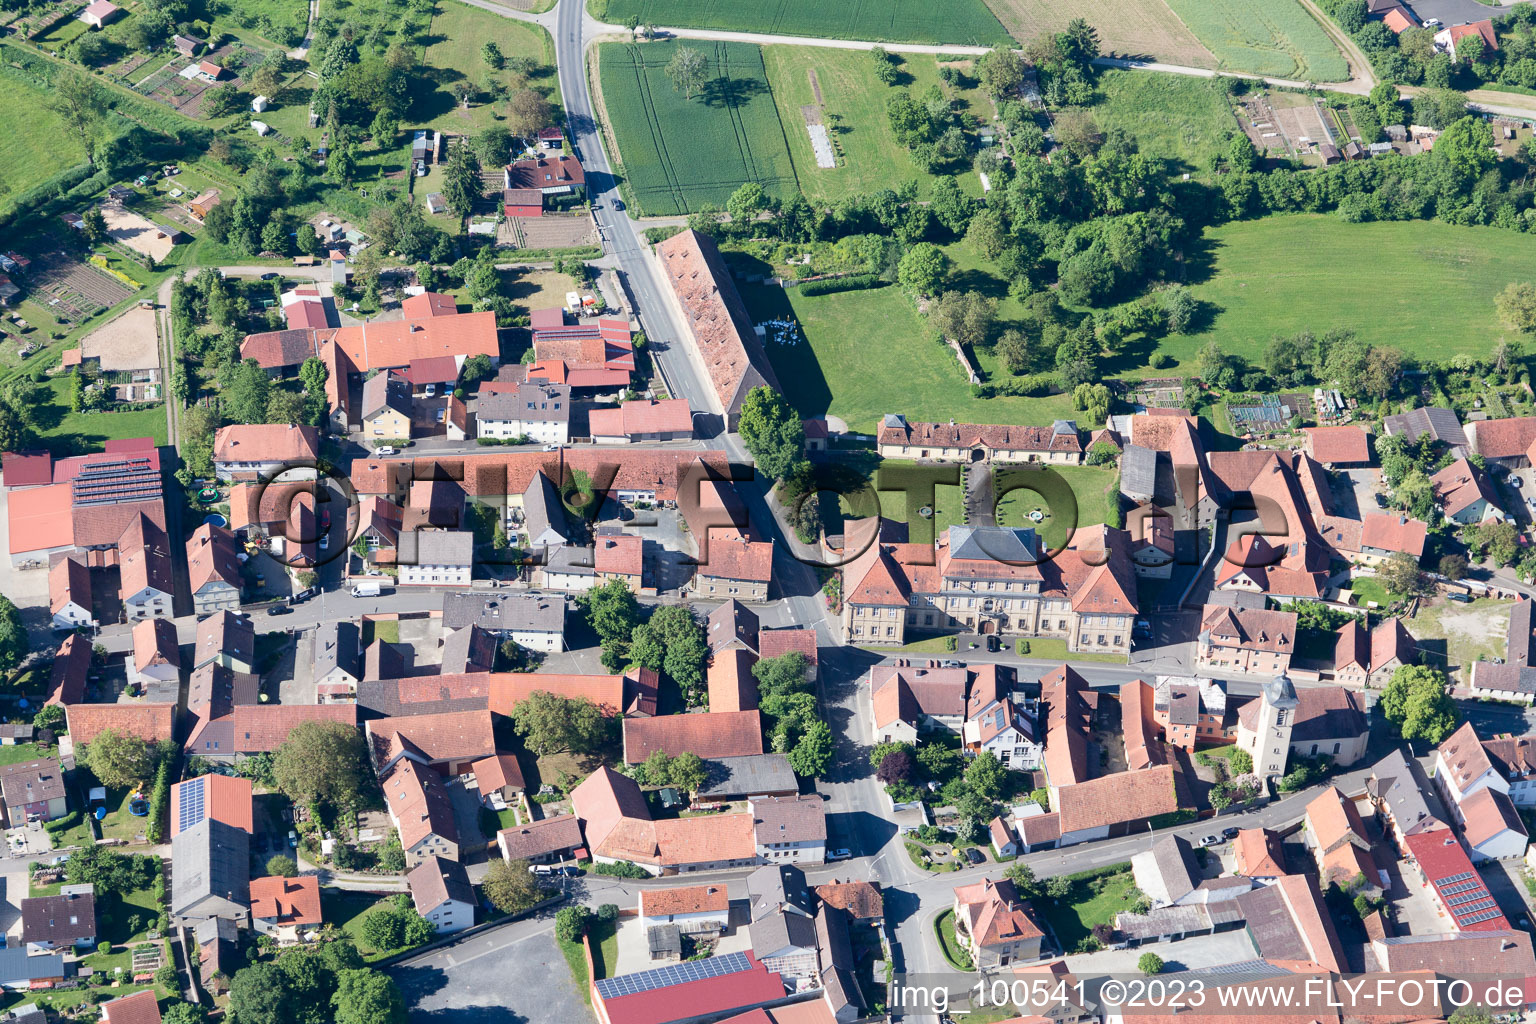 Sulzheim im Bundesland Bayern, Deutschland von der Drohne aus gesehen